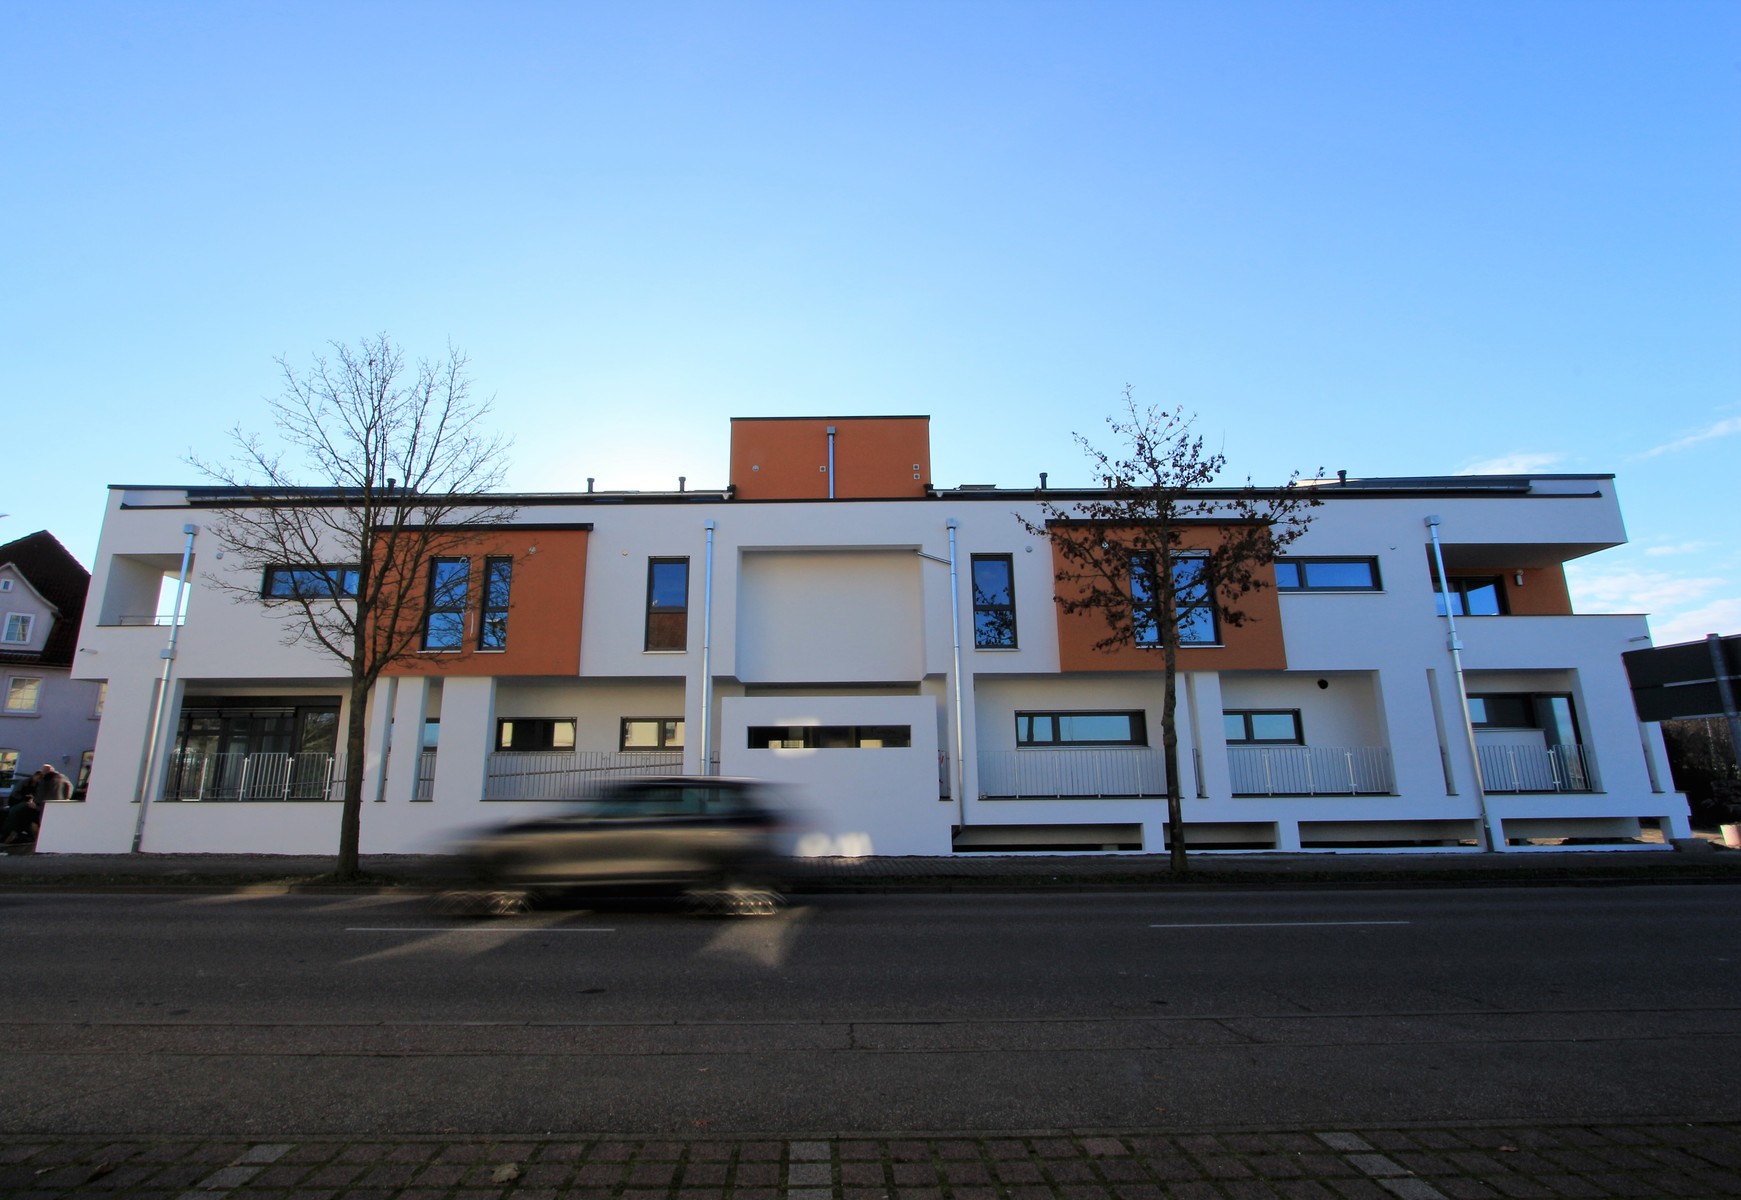 Wohn- und Geschäftshaus in Pfedelbach